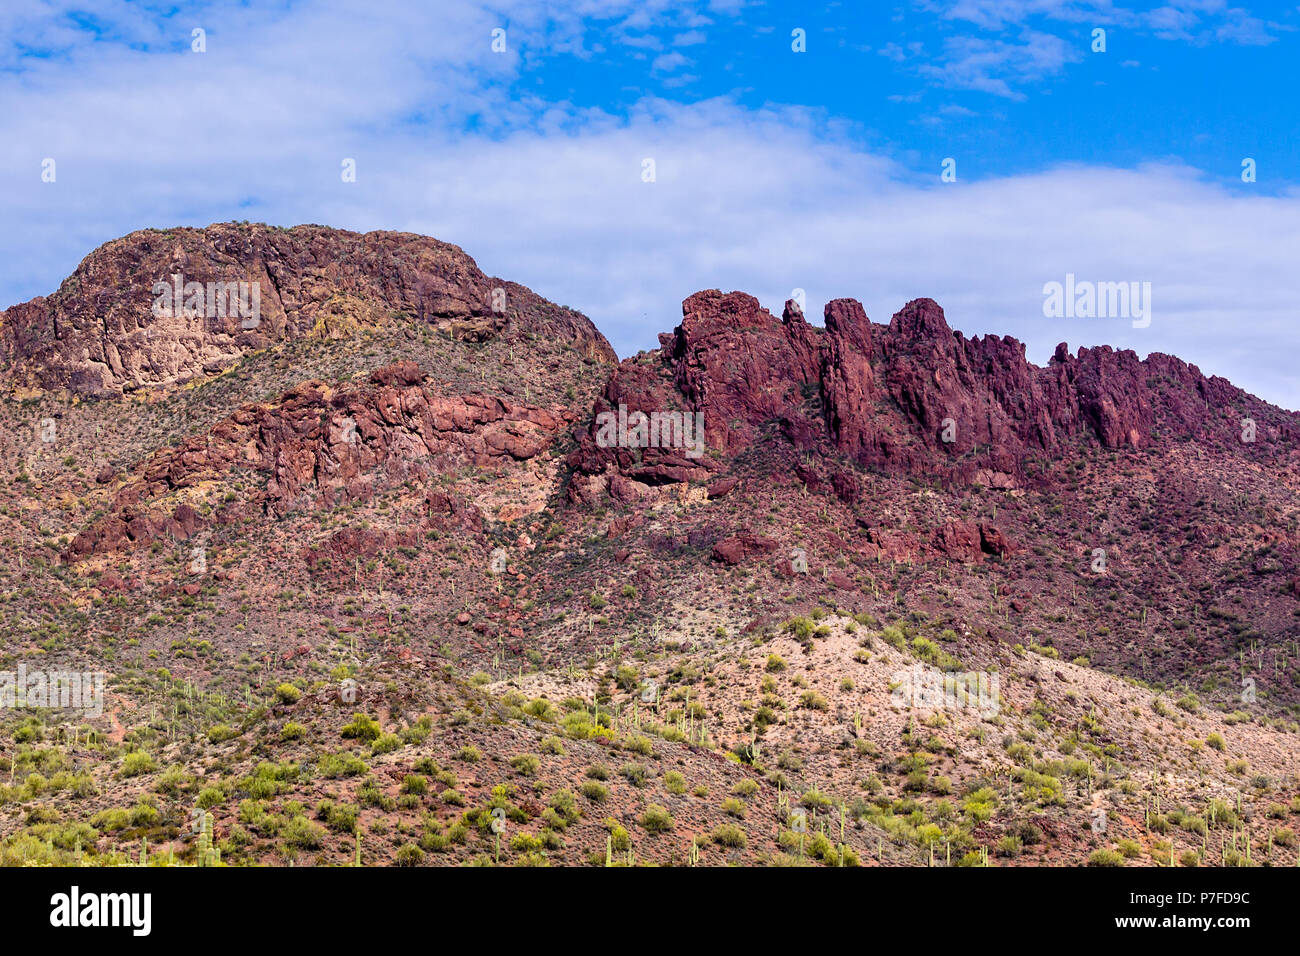 Pic des Vautours près de Wickenburg, dans l'Arizona désert de Sonora. Cactus géant saguaro la base de la litière ; nuages et ciel bleu au-dessus de la crête escarpée et colorés. Banque D'Images